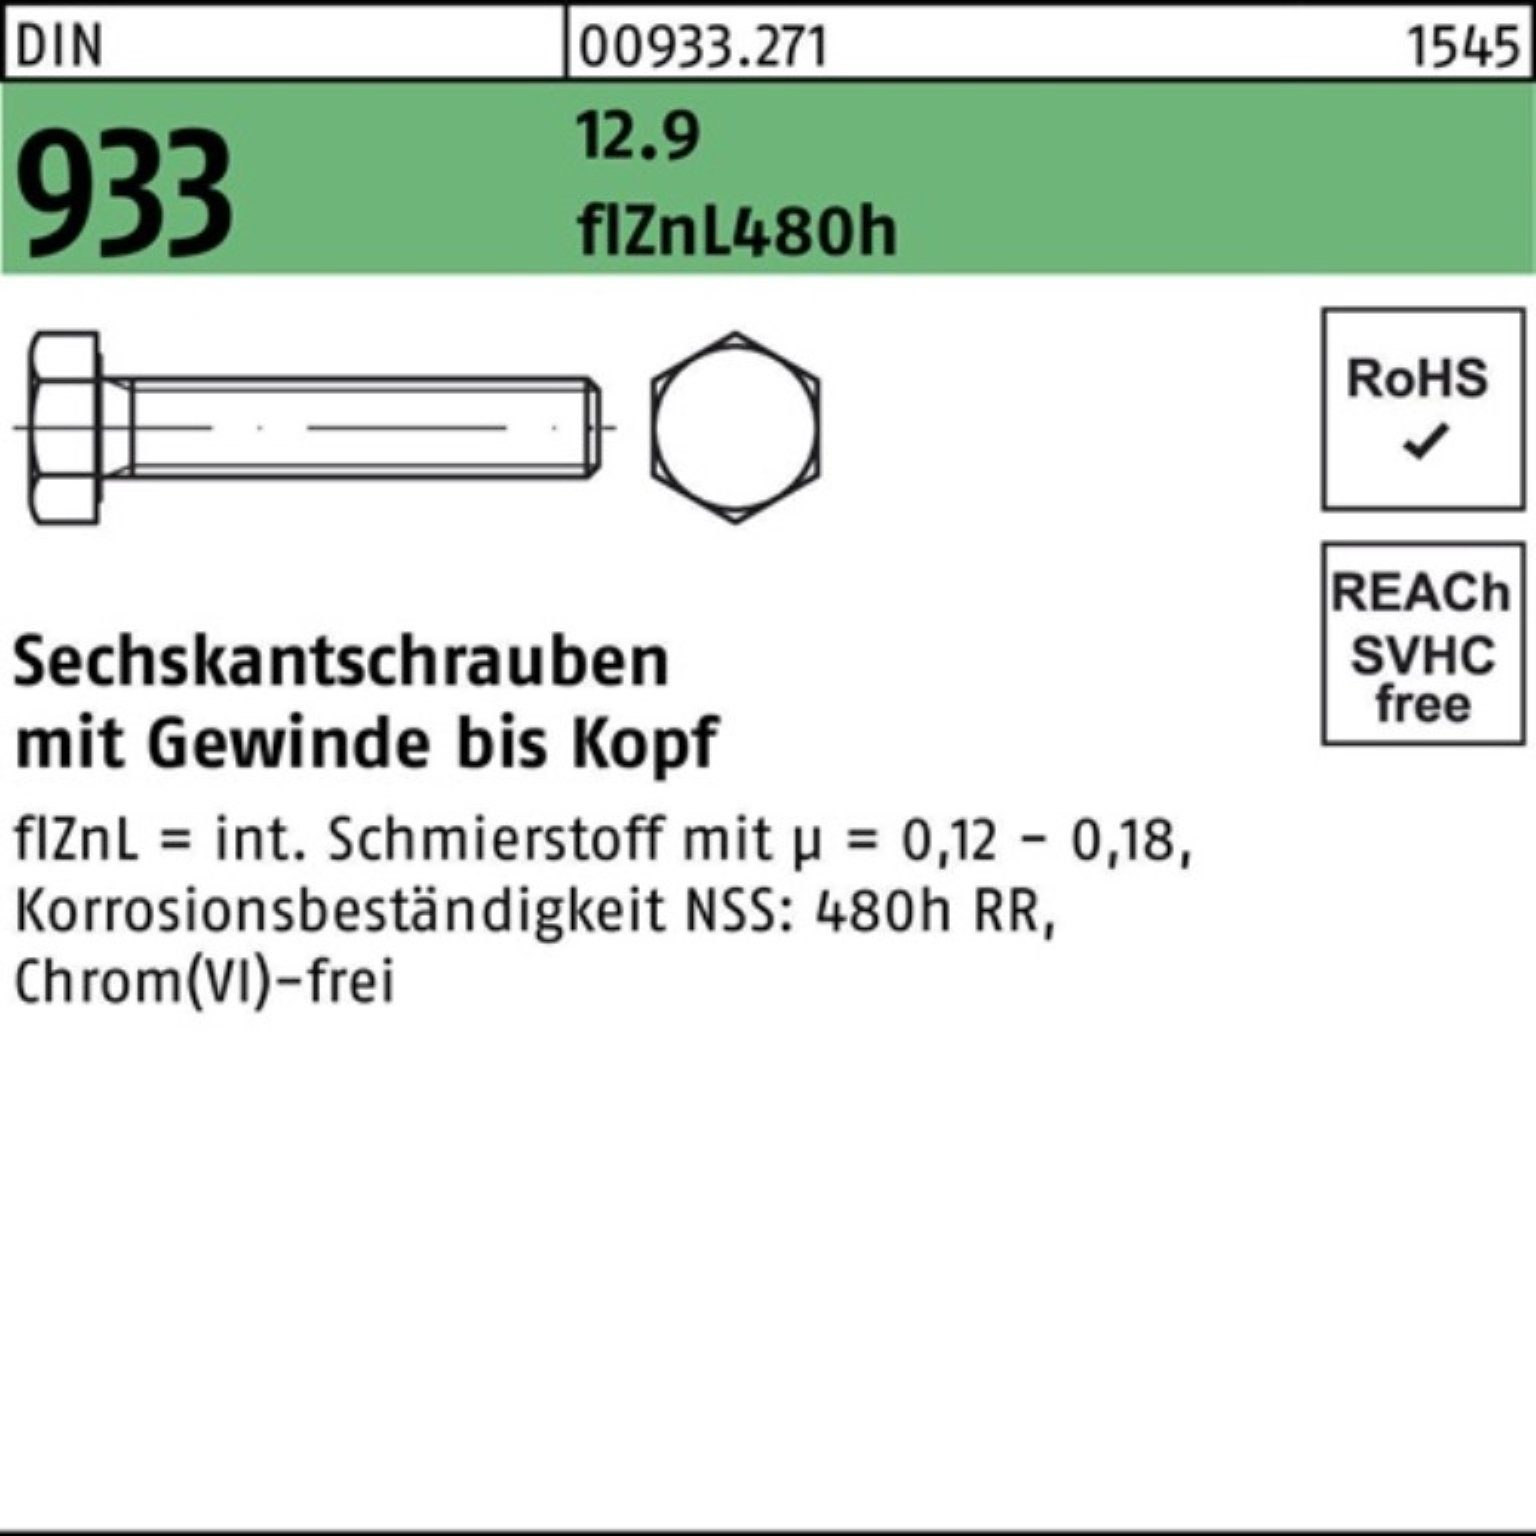 Reyher Sechskantschraube 200er Pack Sechskantschraube DIN 933 VG M8x 25 12.9 flZnL 480h zinklam